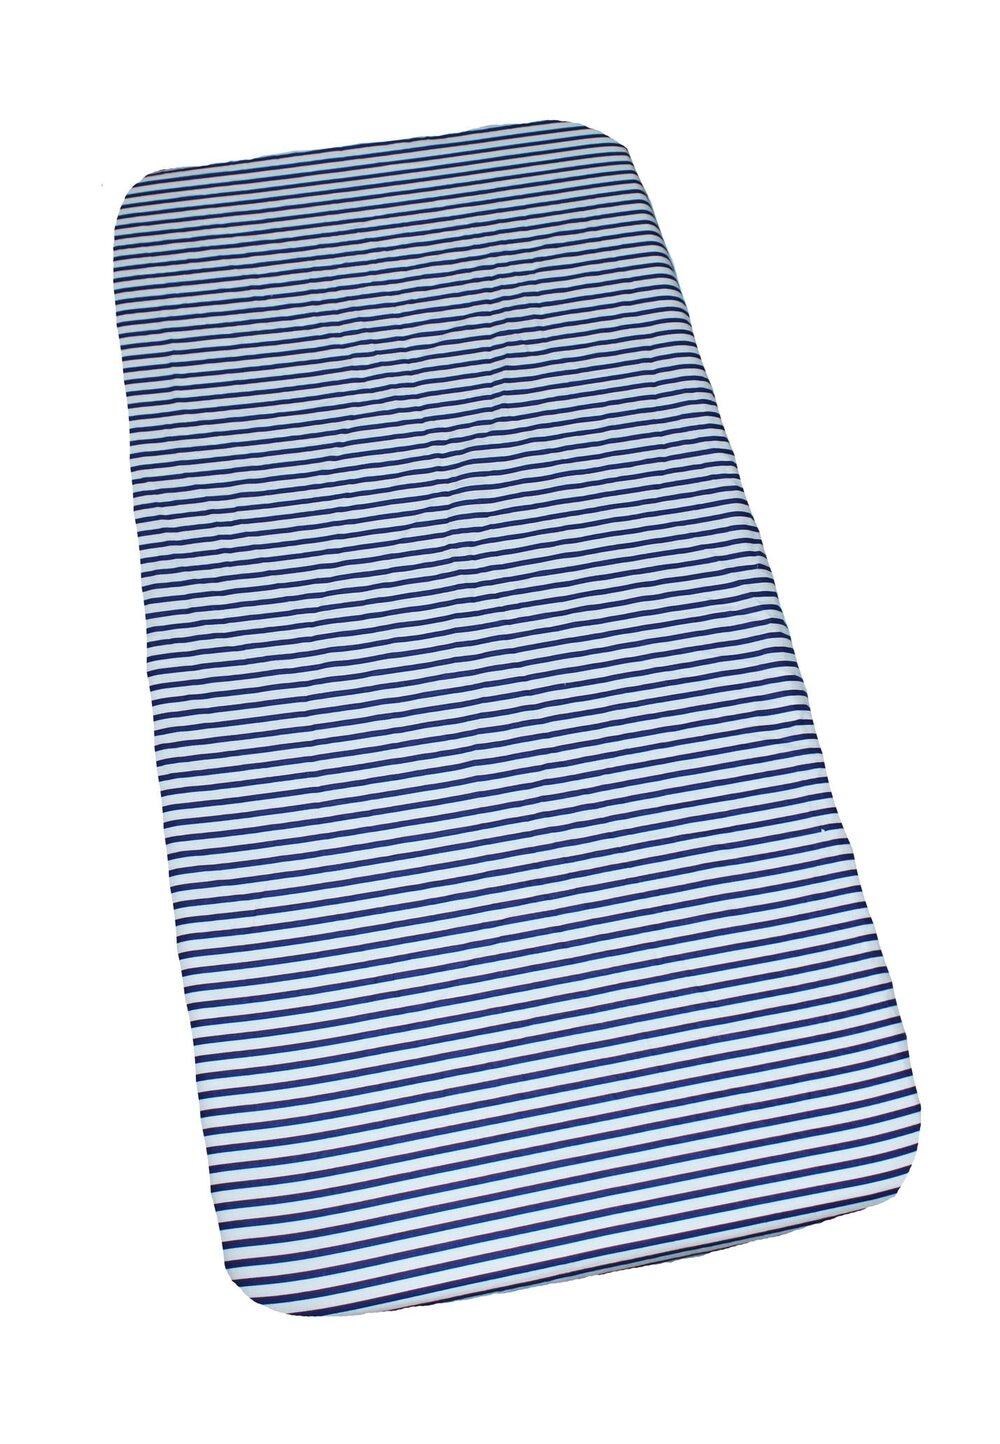 Cearceaf Prichindel, patut 120×60 cm, alb cu dungi bluemarin Prichindel